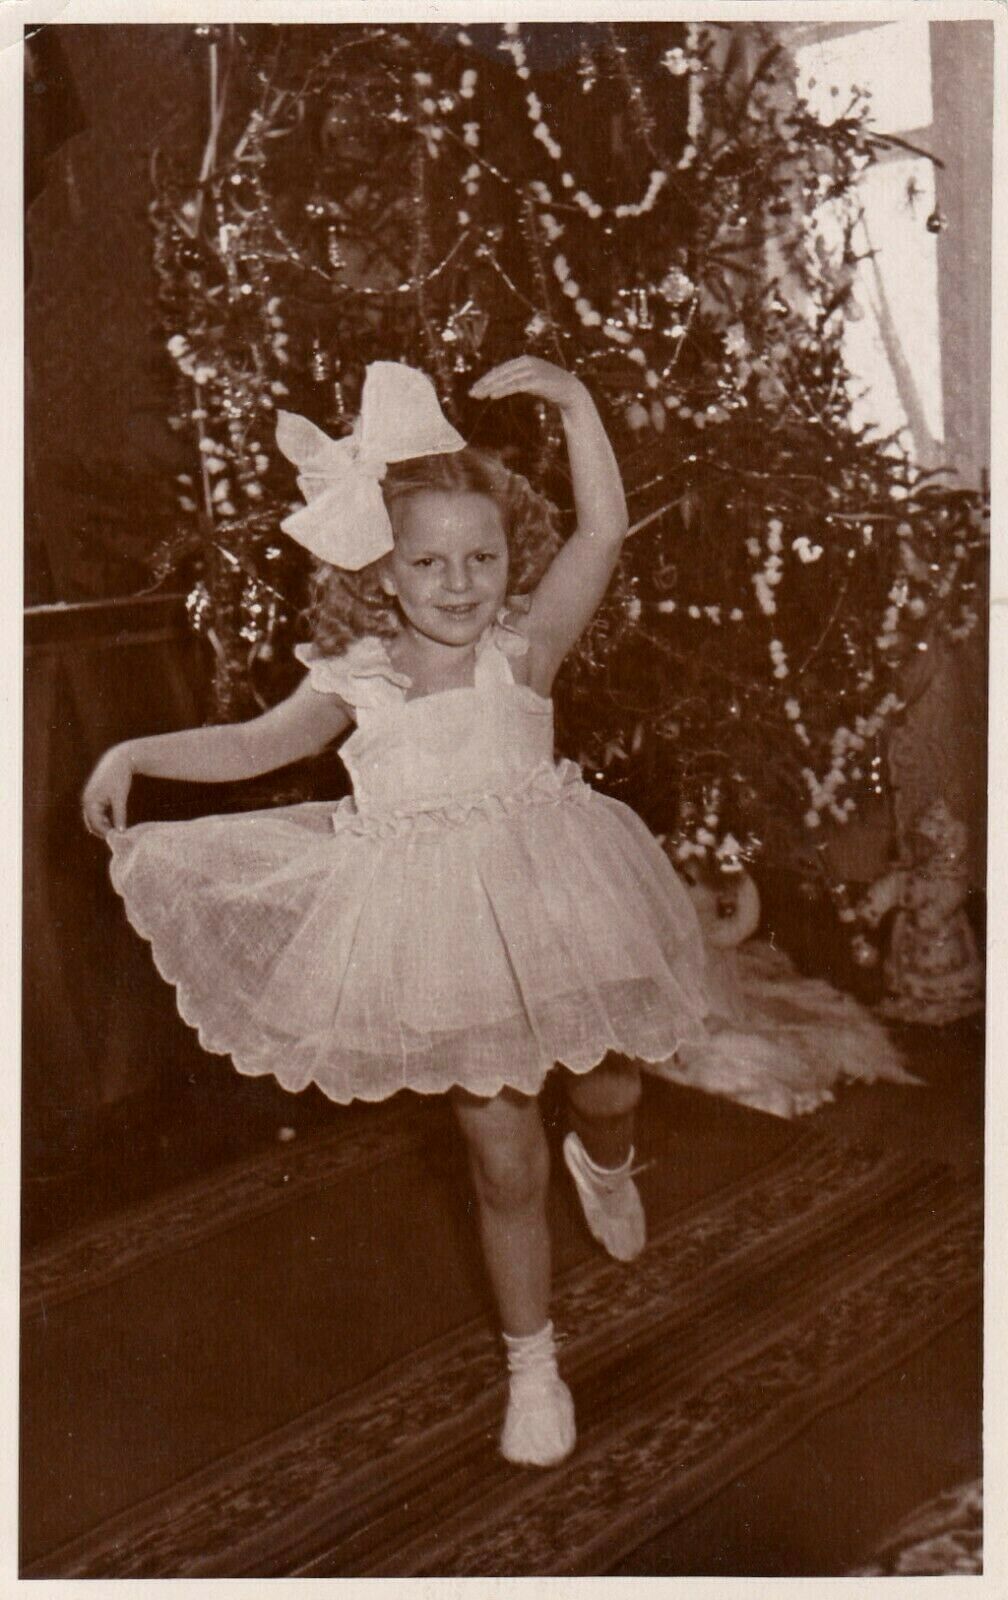 1950s-Cute-little-girl-dancing-Xmas-fancy-dress.jpg